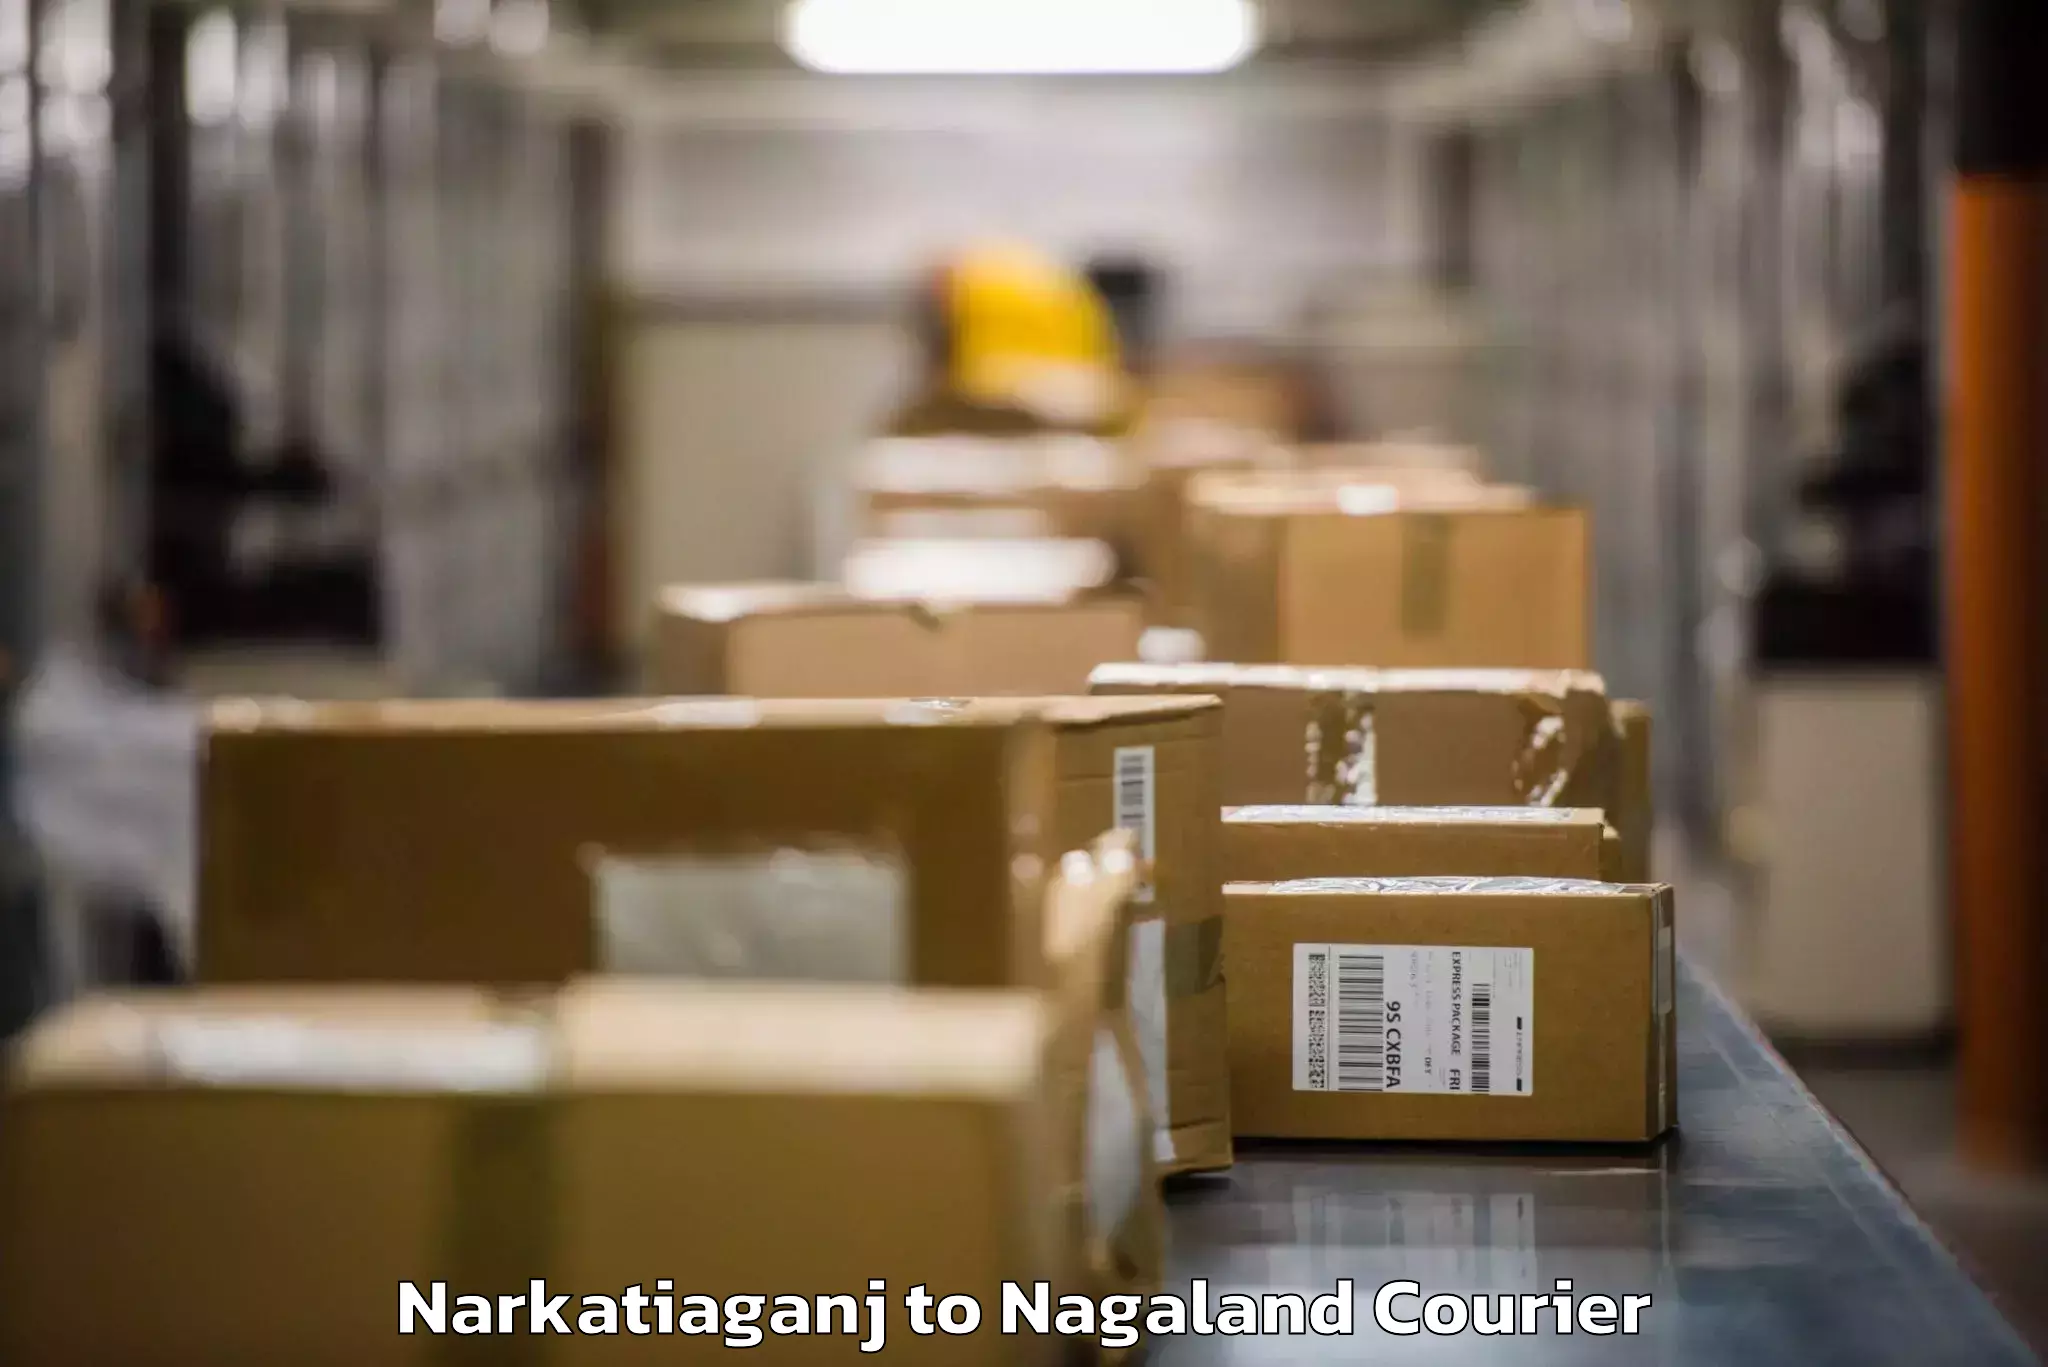 Baggage transport scheduler Narkatiaganj to Longleng